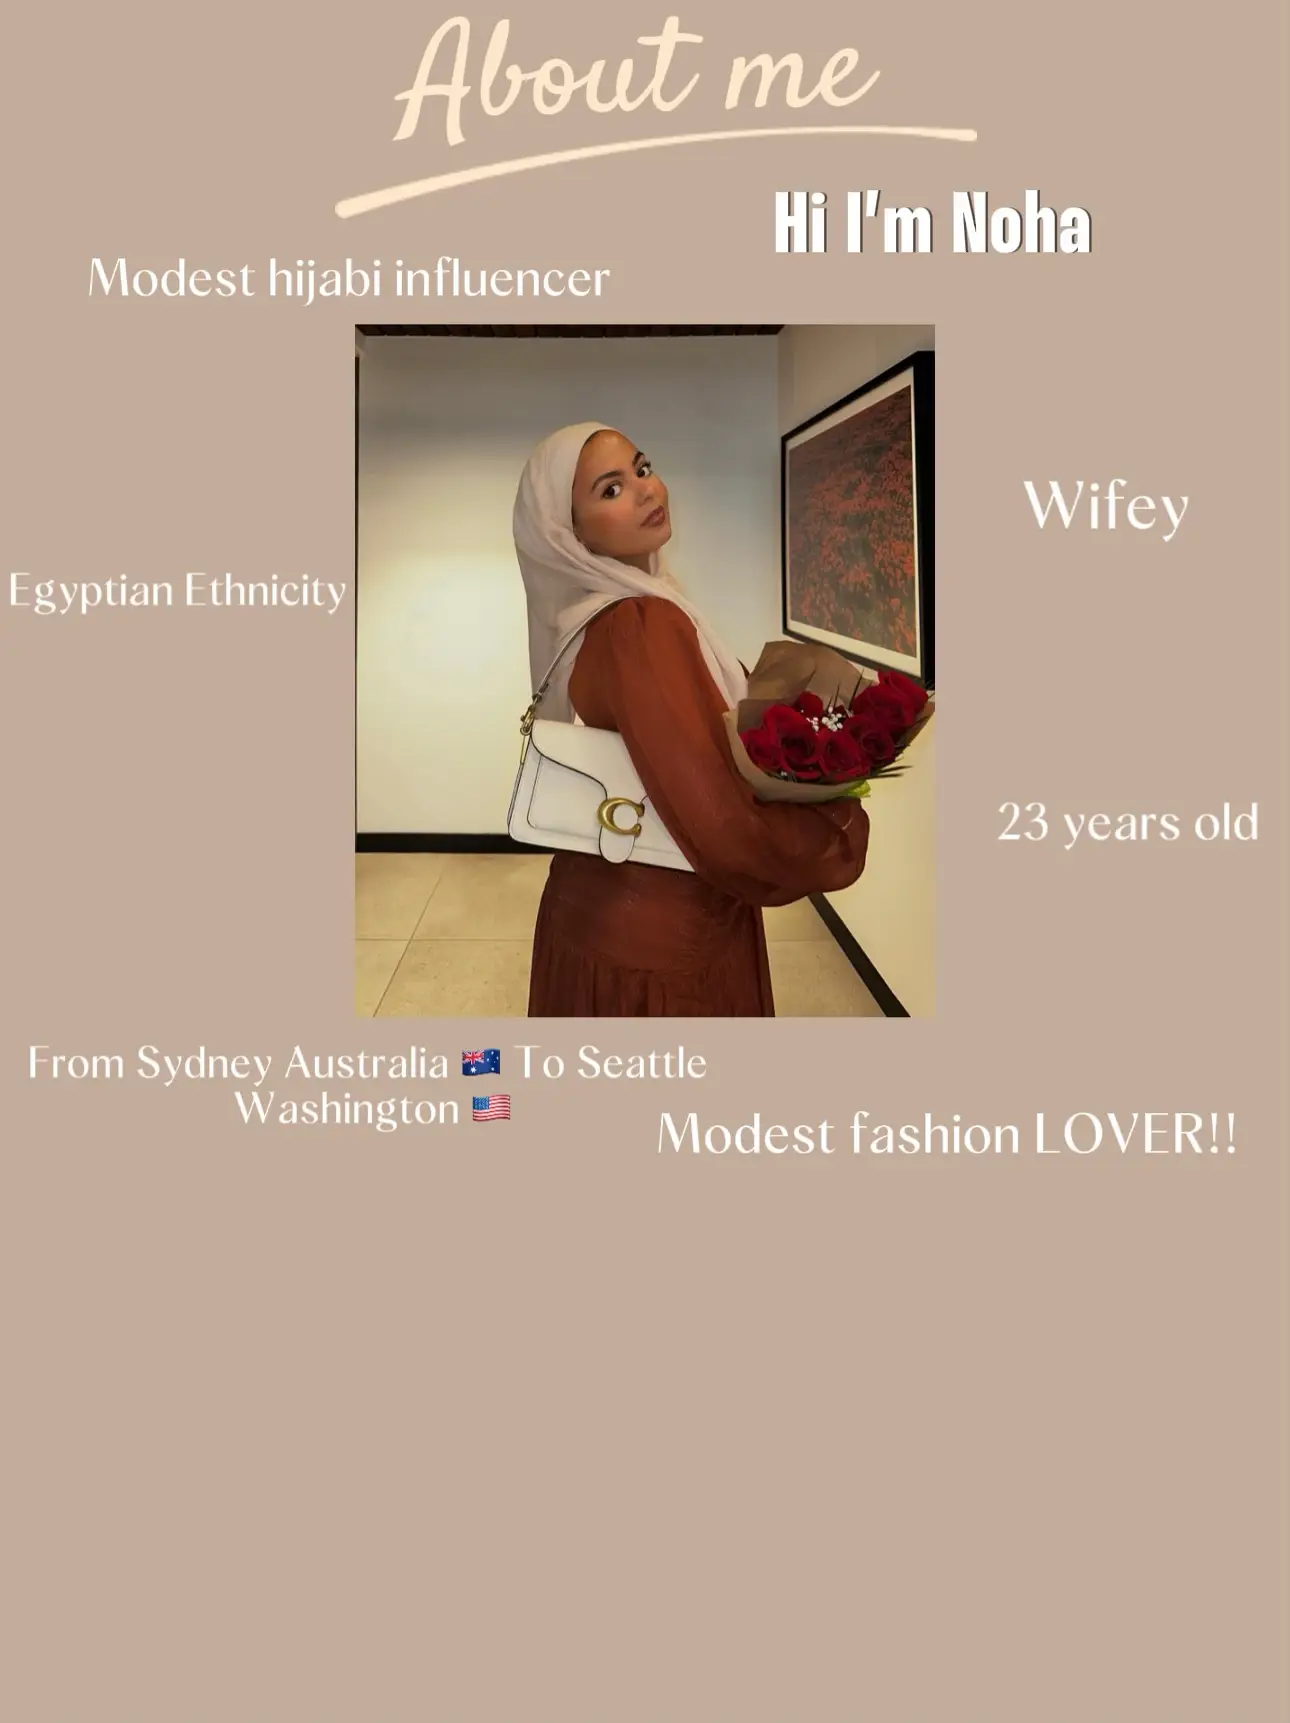 Hijabistan - Lemon8 Search